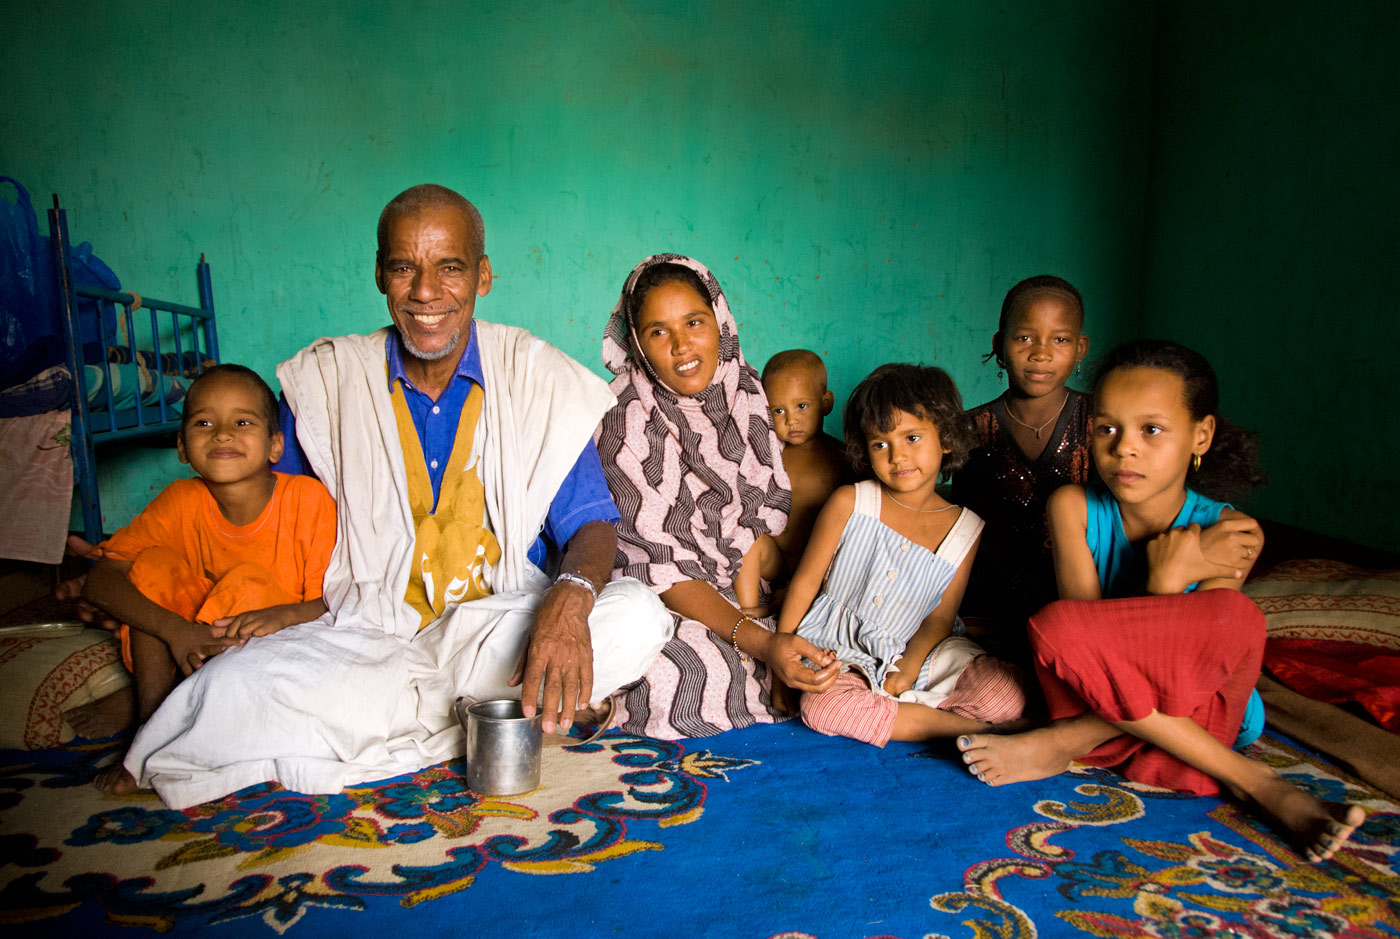 Malian family, Tombouctou, 2009